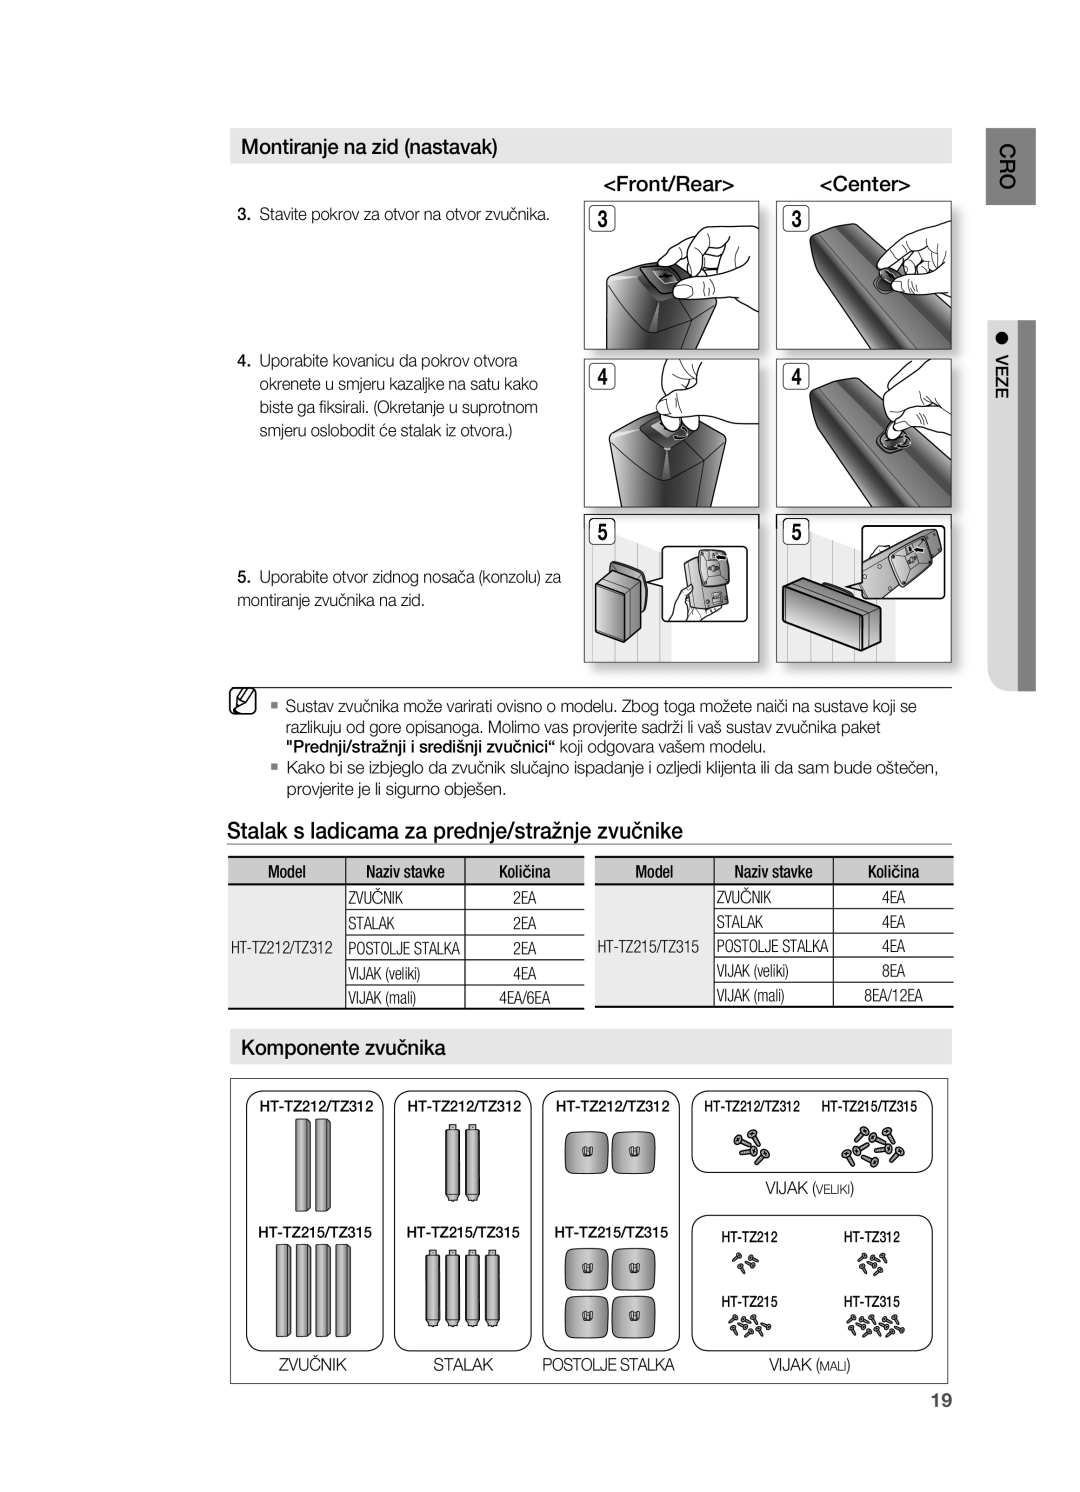 Samsung HT-TZ212R/EDC manual Stalak s ladicama za prednje/stražnje zvučnike, Front/Rear, Center, komponente zvučnika 